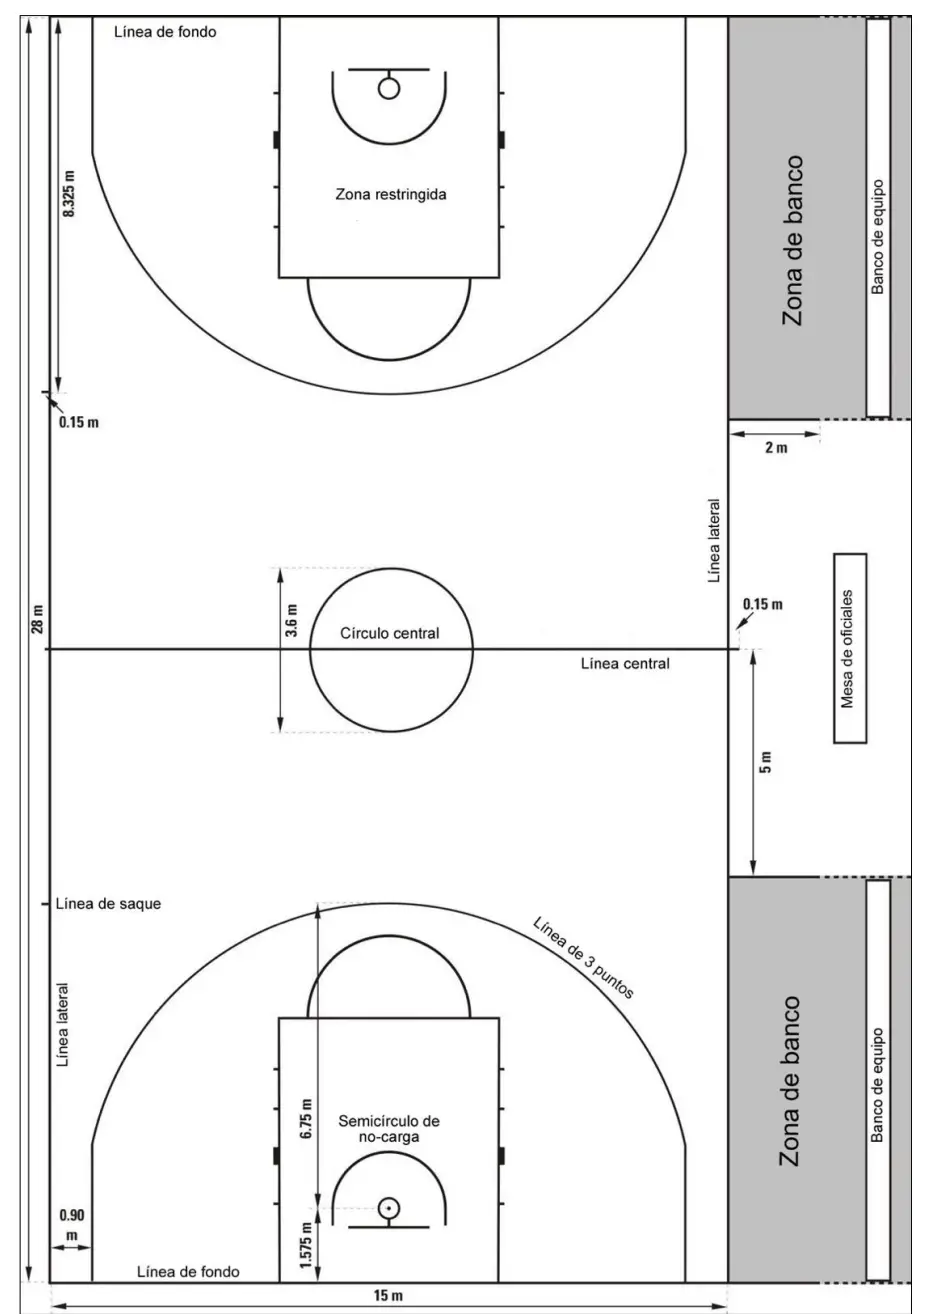 ▷ Campo de baloncesto: medidas, líneas y zonas